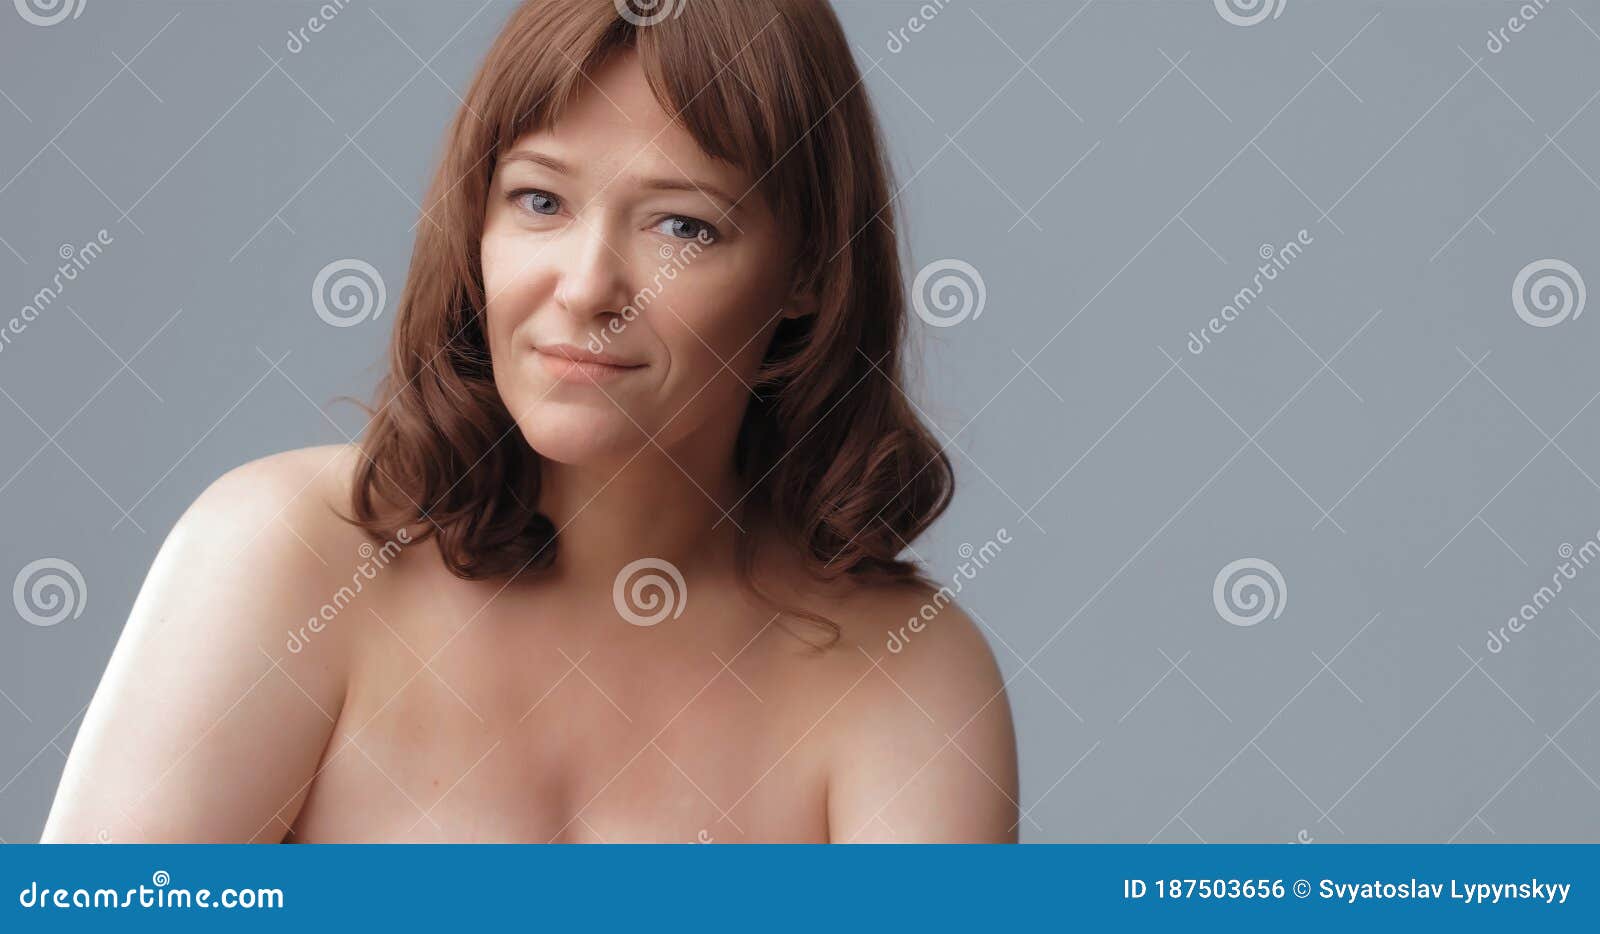 Mature Female Naked